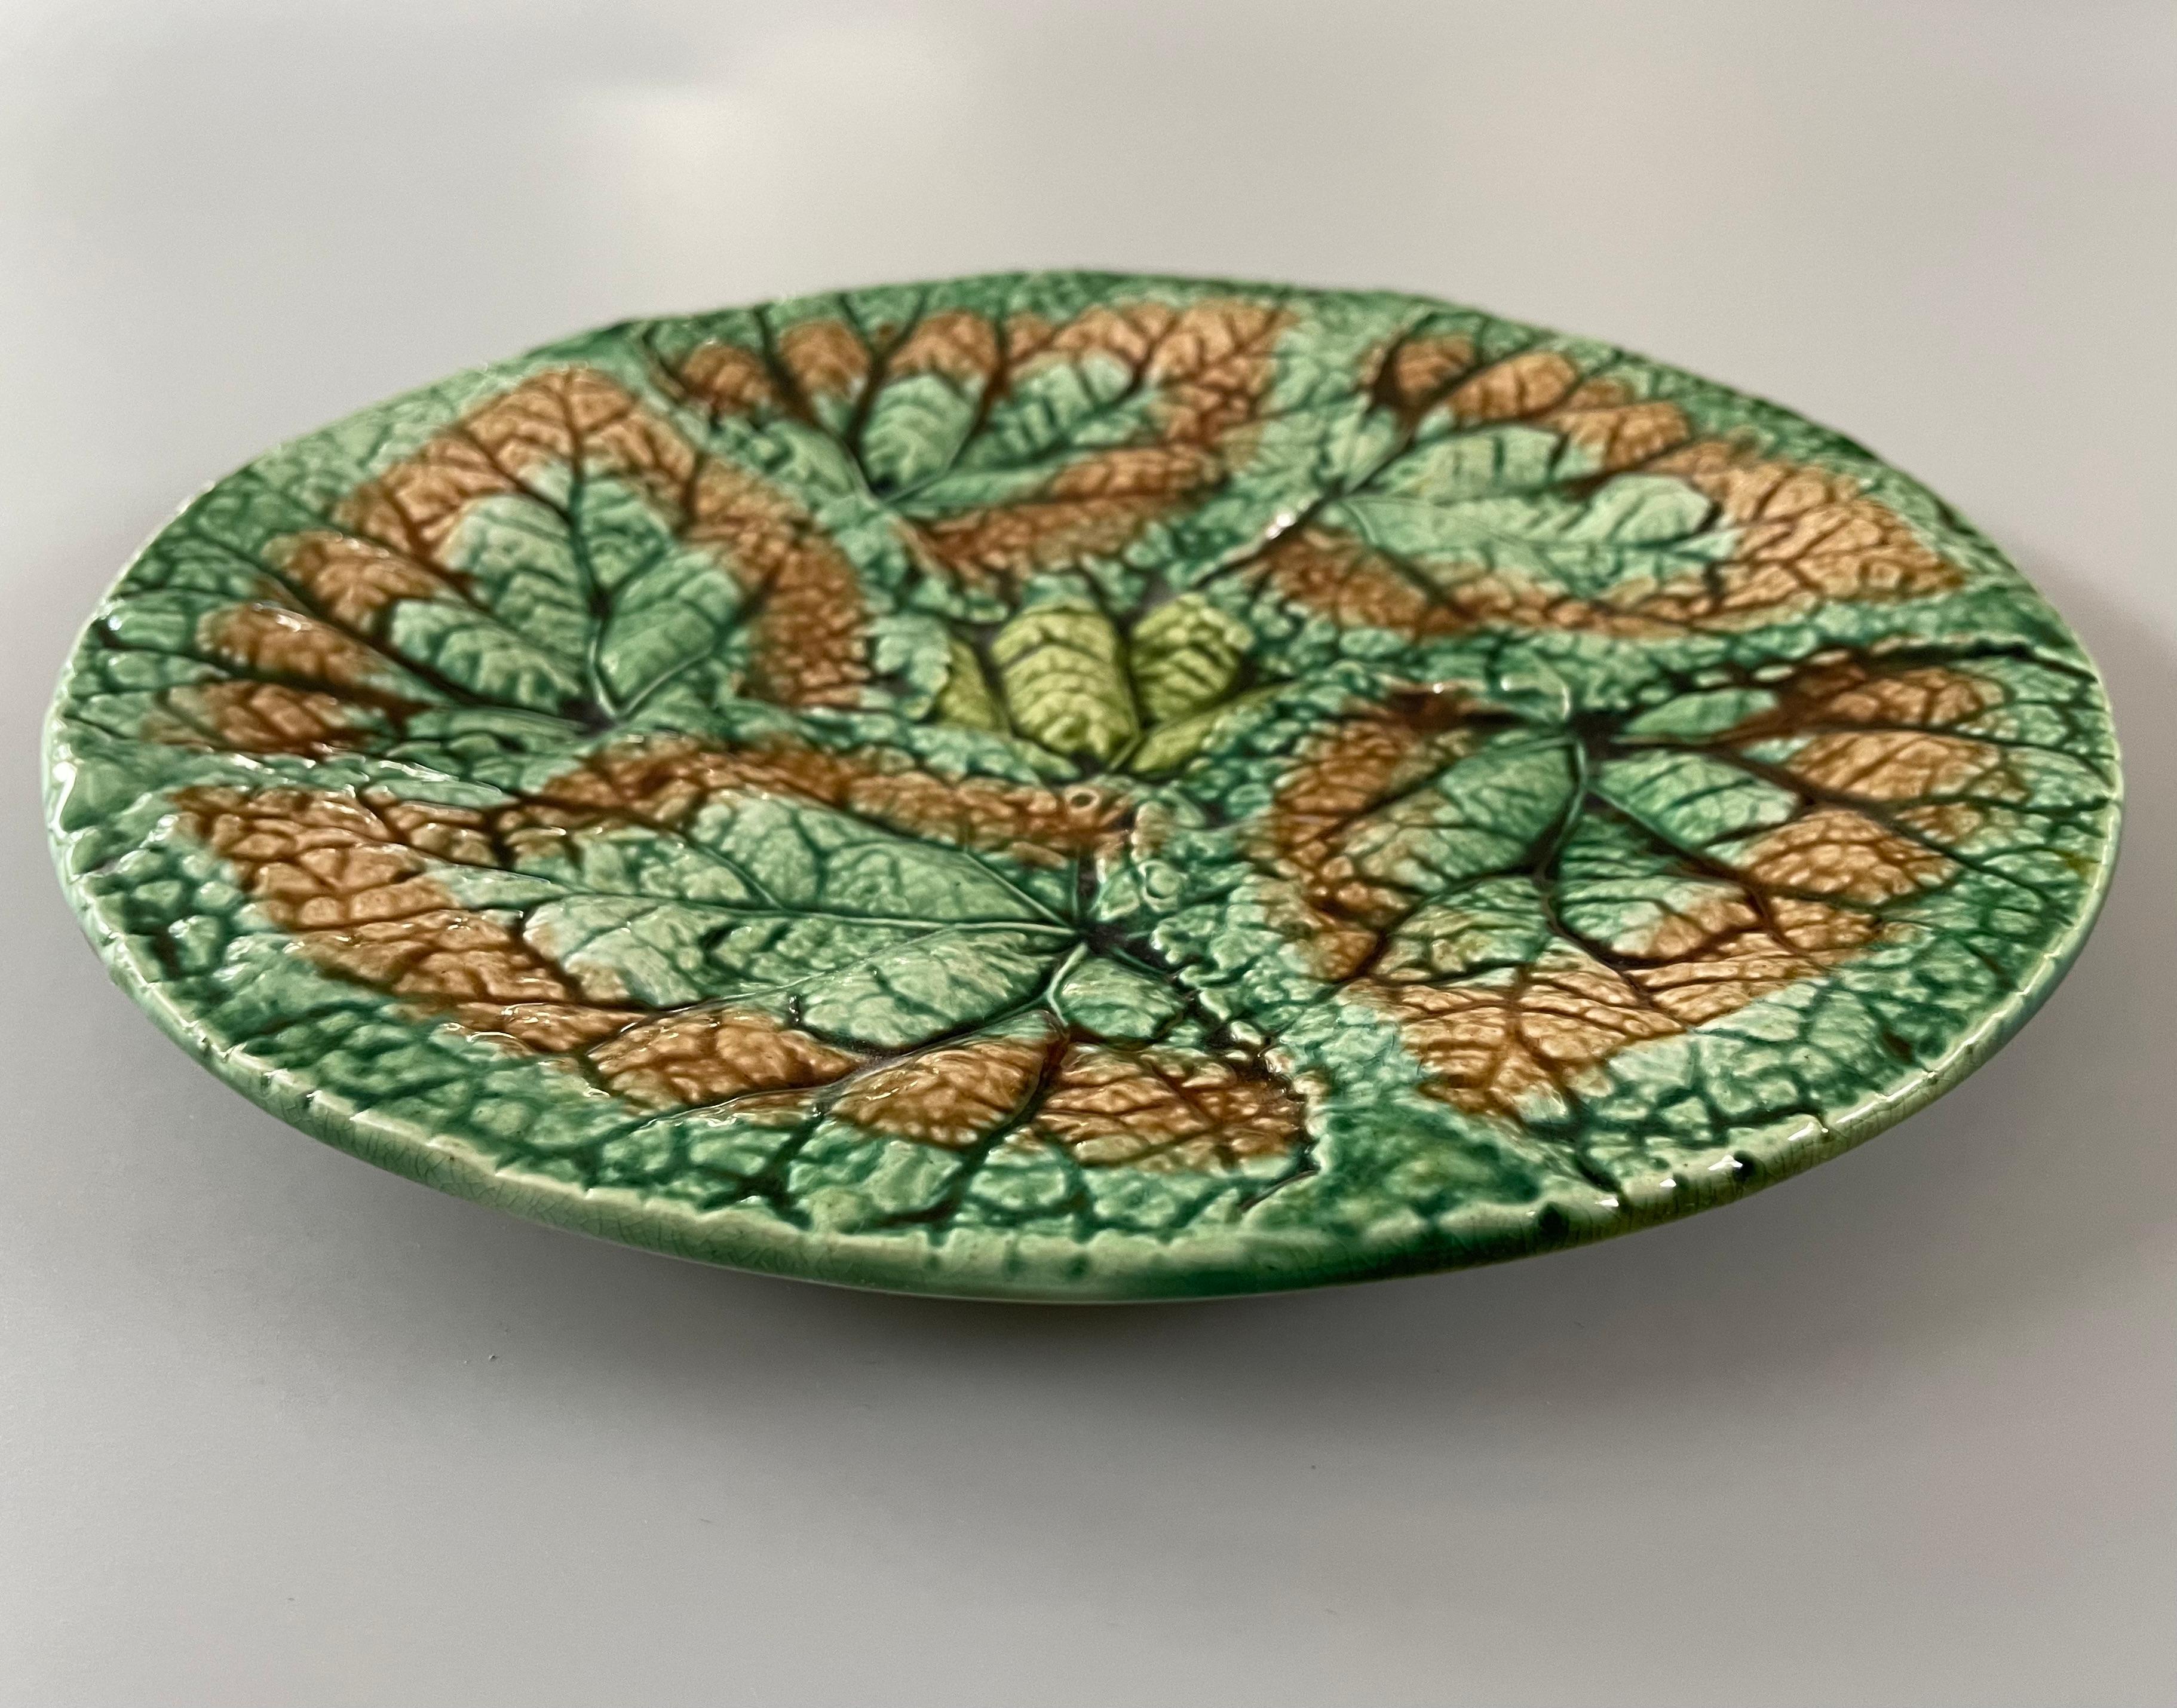 Ein Majolika-Teller aus glasierter Keramik des 19. Jahrhunderts mit Begonienblättern von Griffen Smith & Hill. Ein schön strukturierter etruskischer Majolikateller mit sich überlappenden grünen und braunen Blättern. Grüne und goldene Glasur auf der